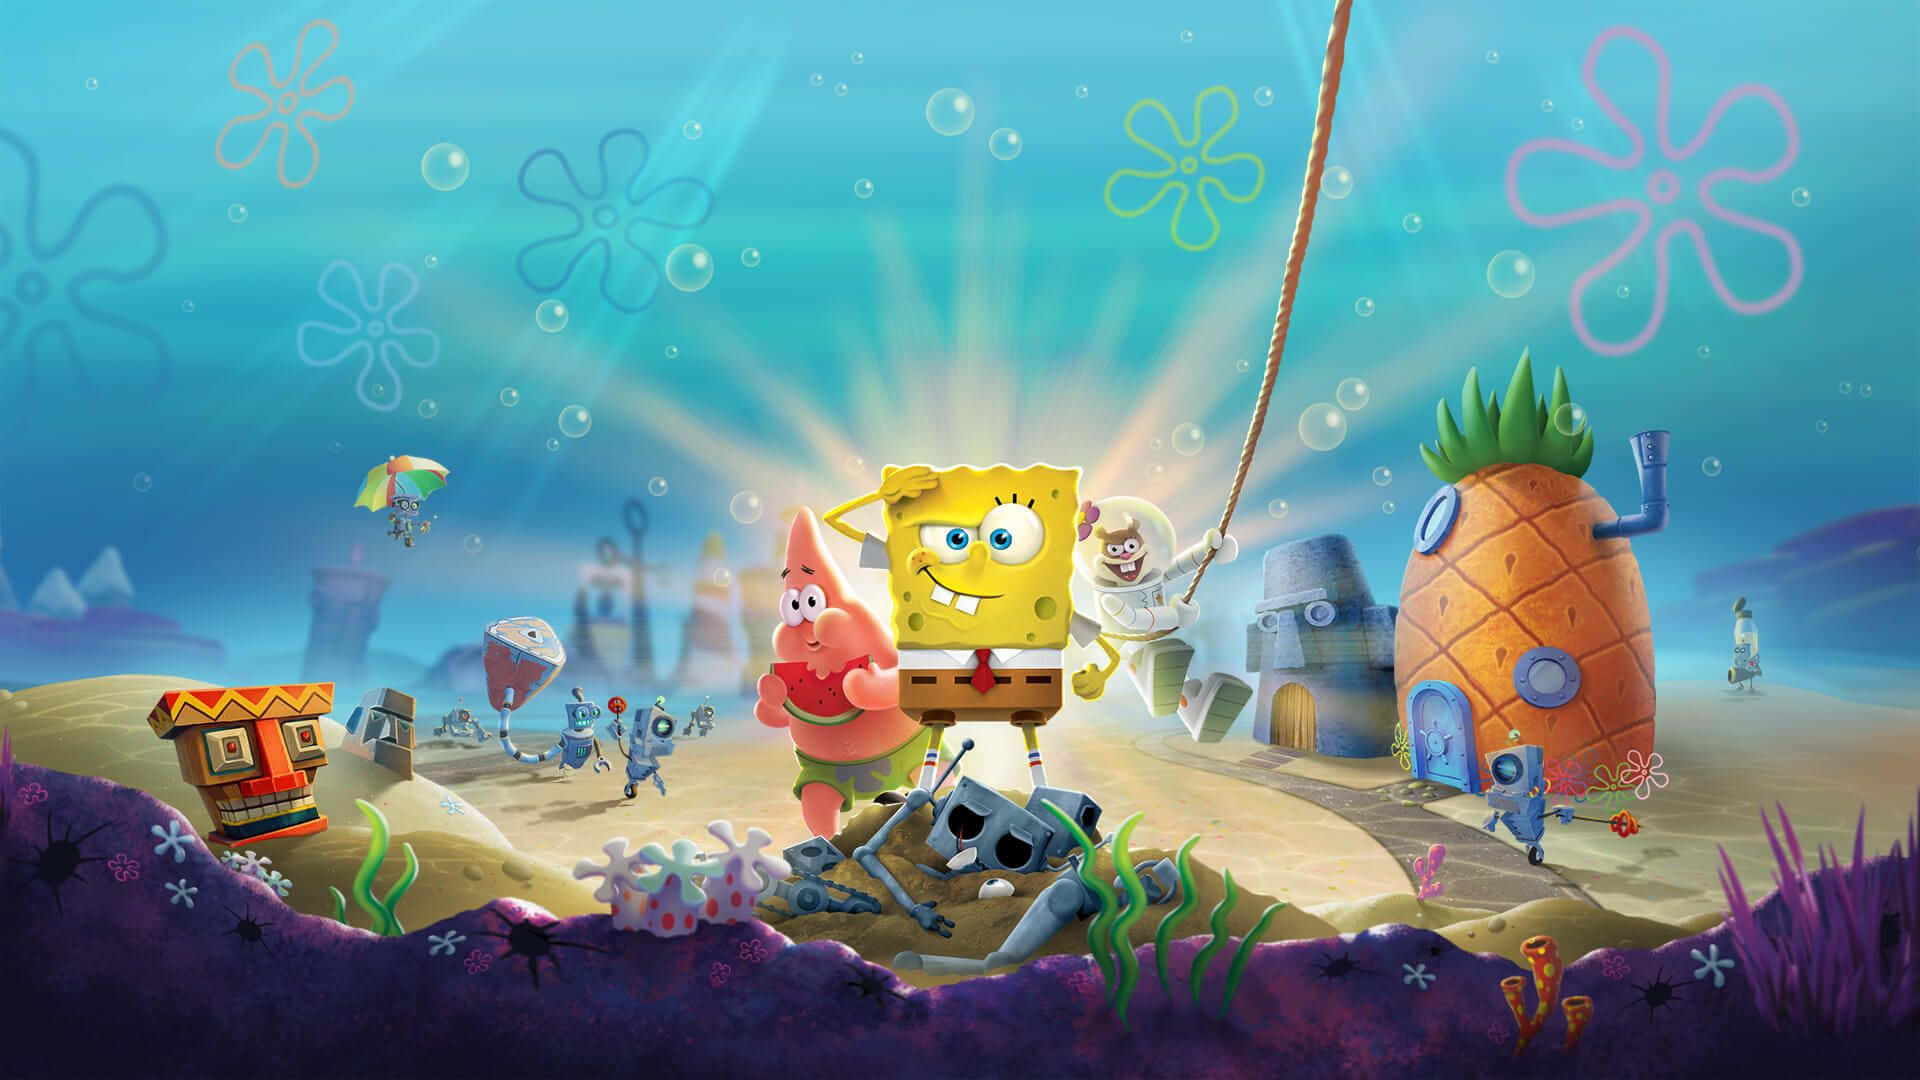 Upplyftdin Skrivbord Med Denna Klassiska Bild Av Spongebob! Wallpaper